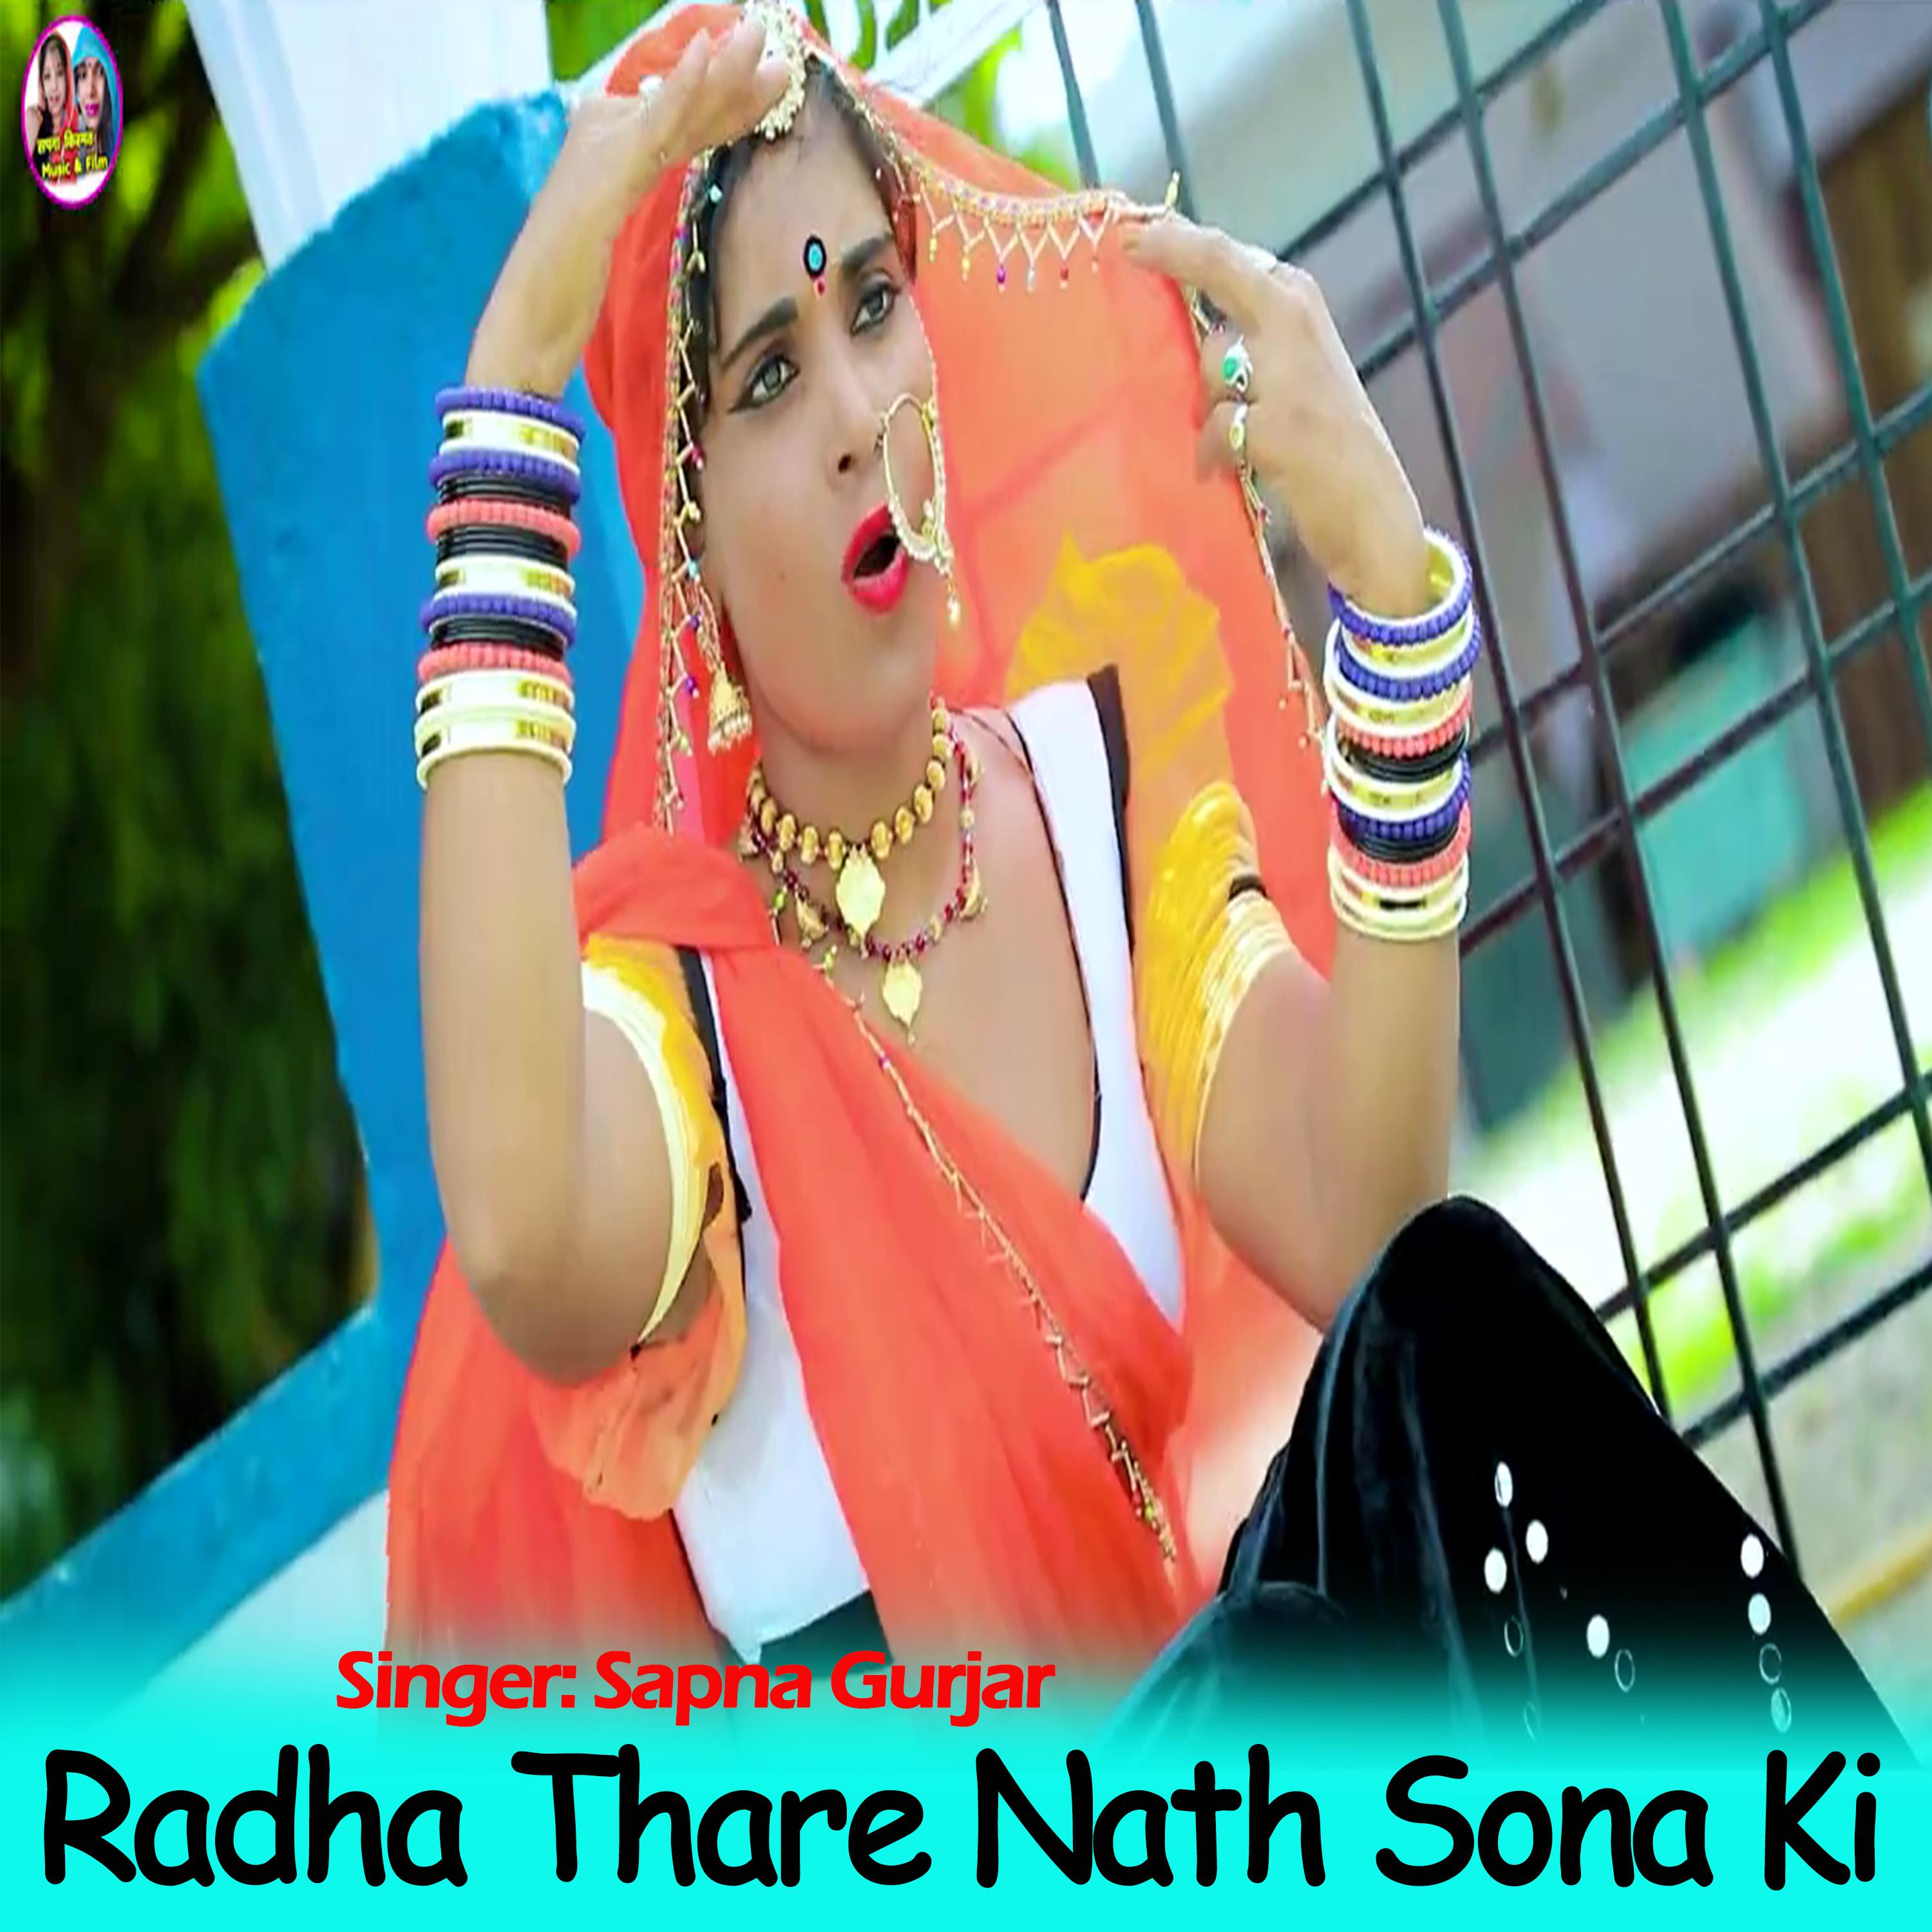 Sapna Gurjar - Radha Thare Nath Sona Ki